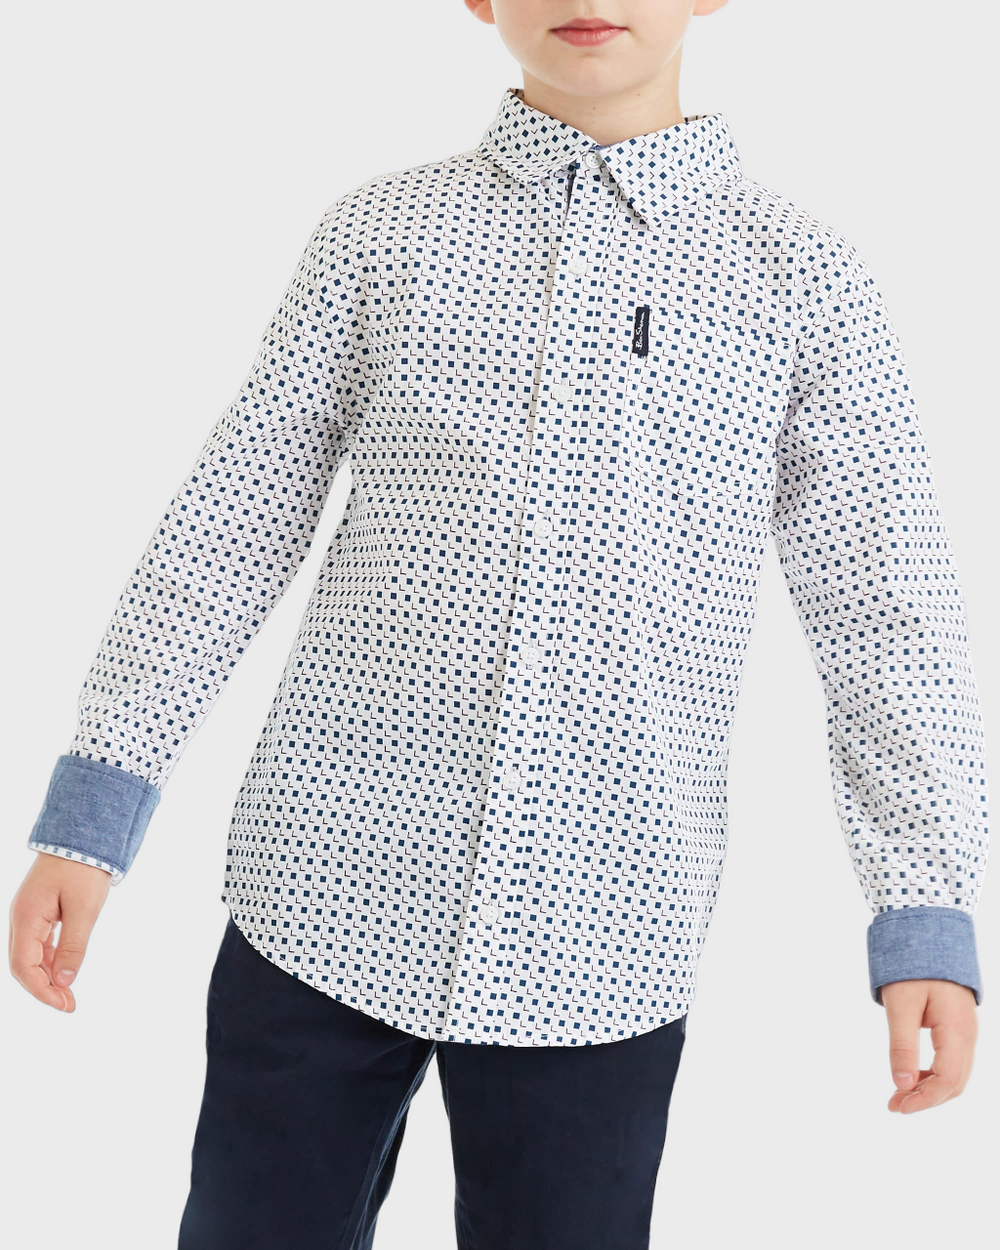 Boys Square Print Button-Down Shirt (Sizes 8-18)